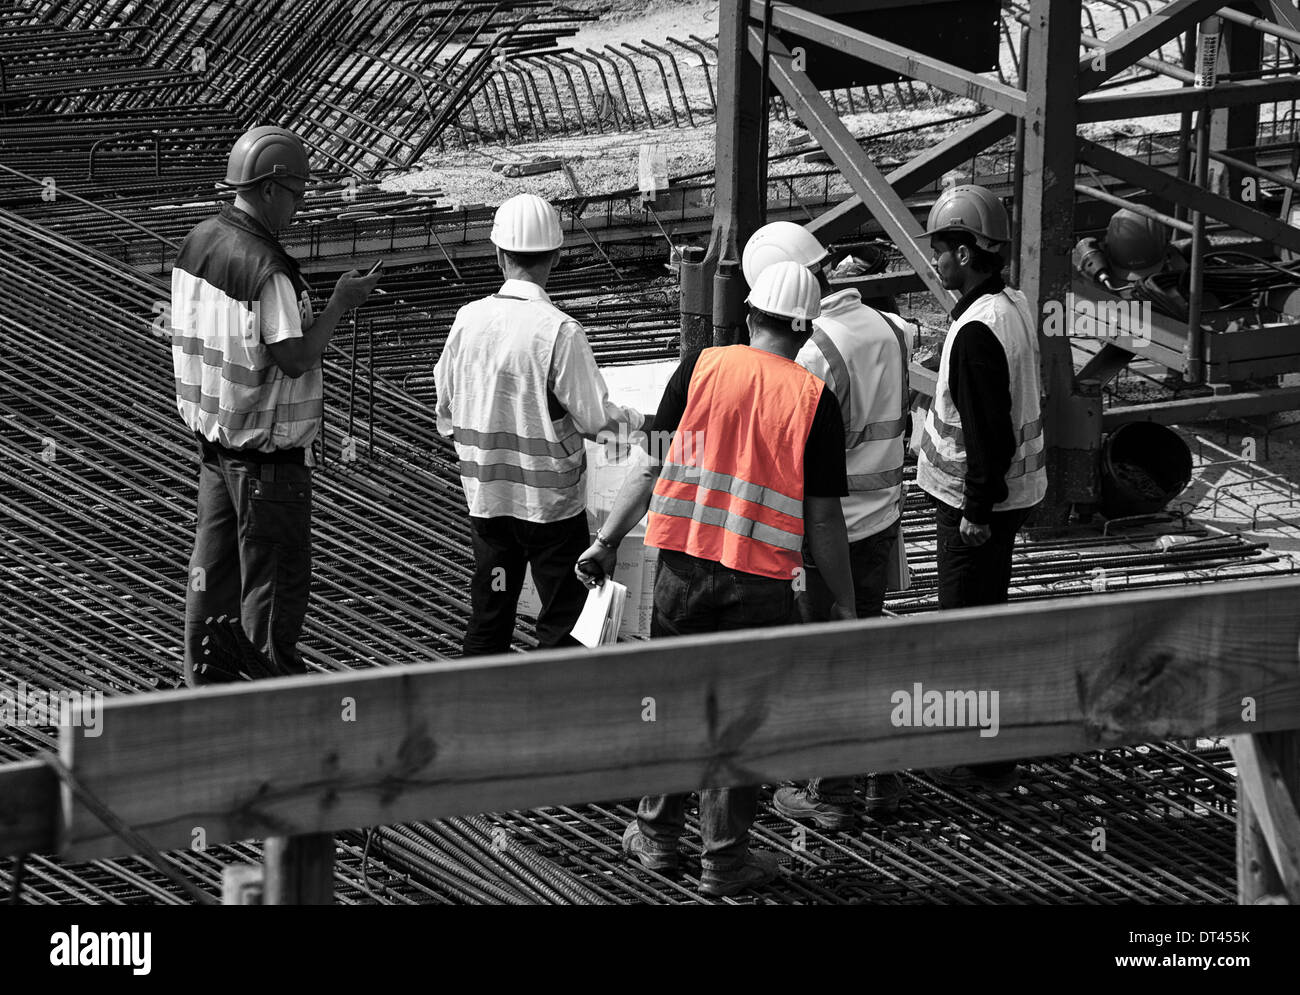 Vorarbeiter in Schutzhelm und Weste mit Ordner von Dokumenten auf der  Baustelle Stockfotografie - Alamy